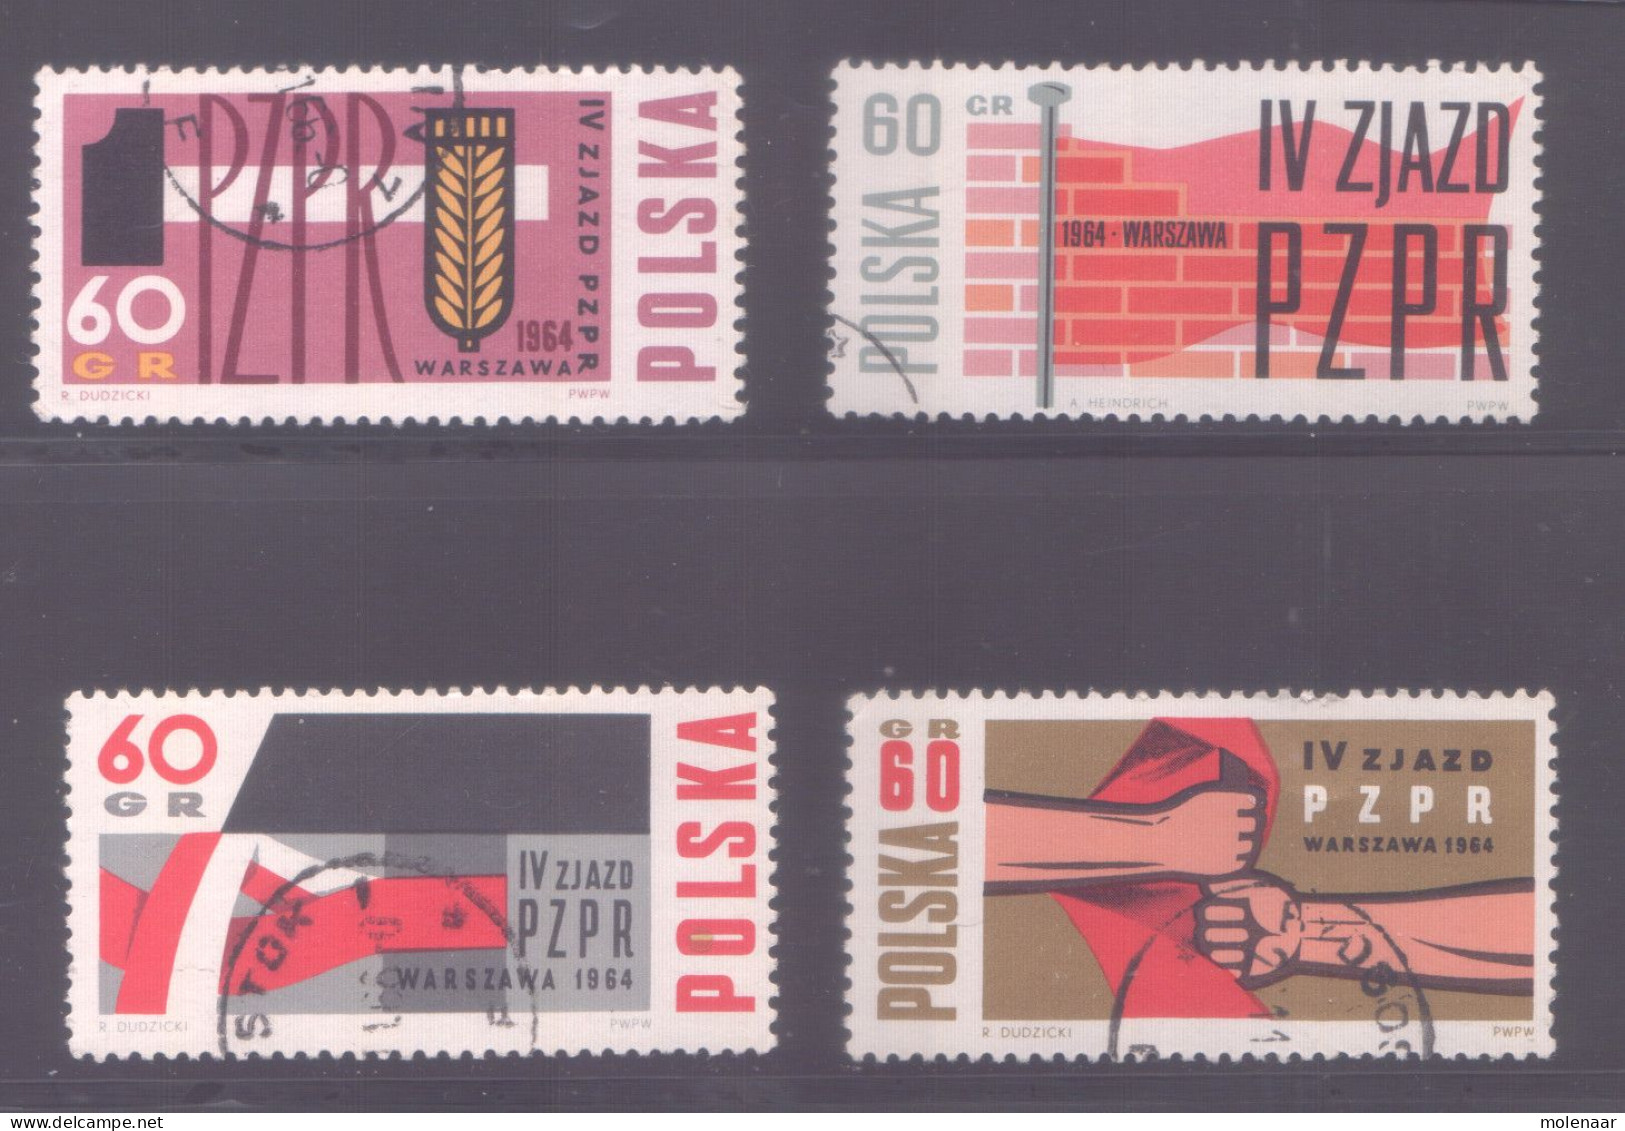 Postzegels > Europa > Polen > 1944-.... Republiek > 1971-80 > Gebruikt No.  1492-1495 (11960) - Lettres & Documents